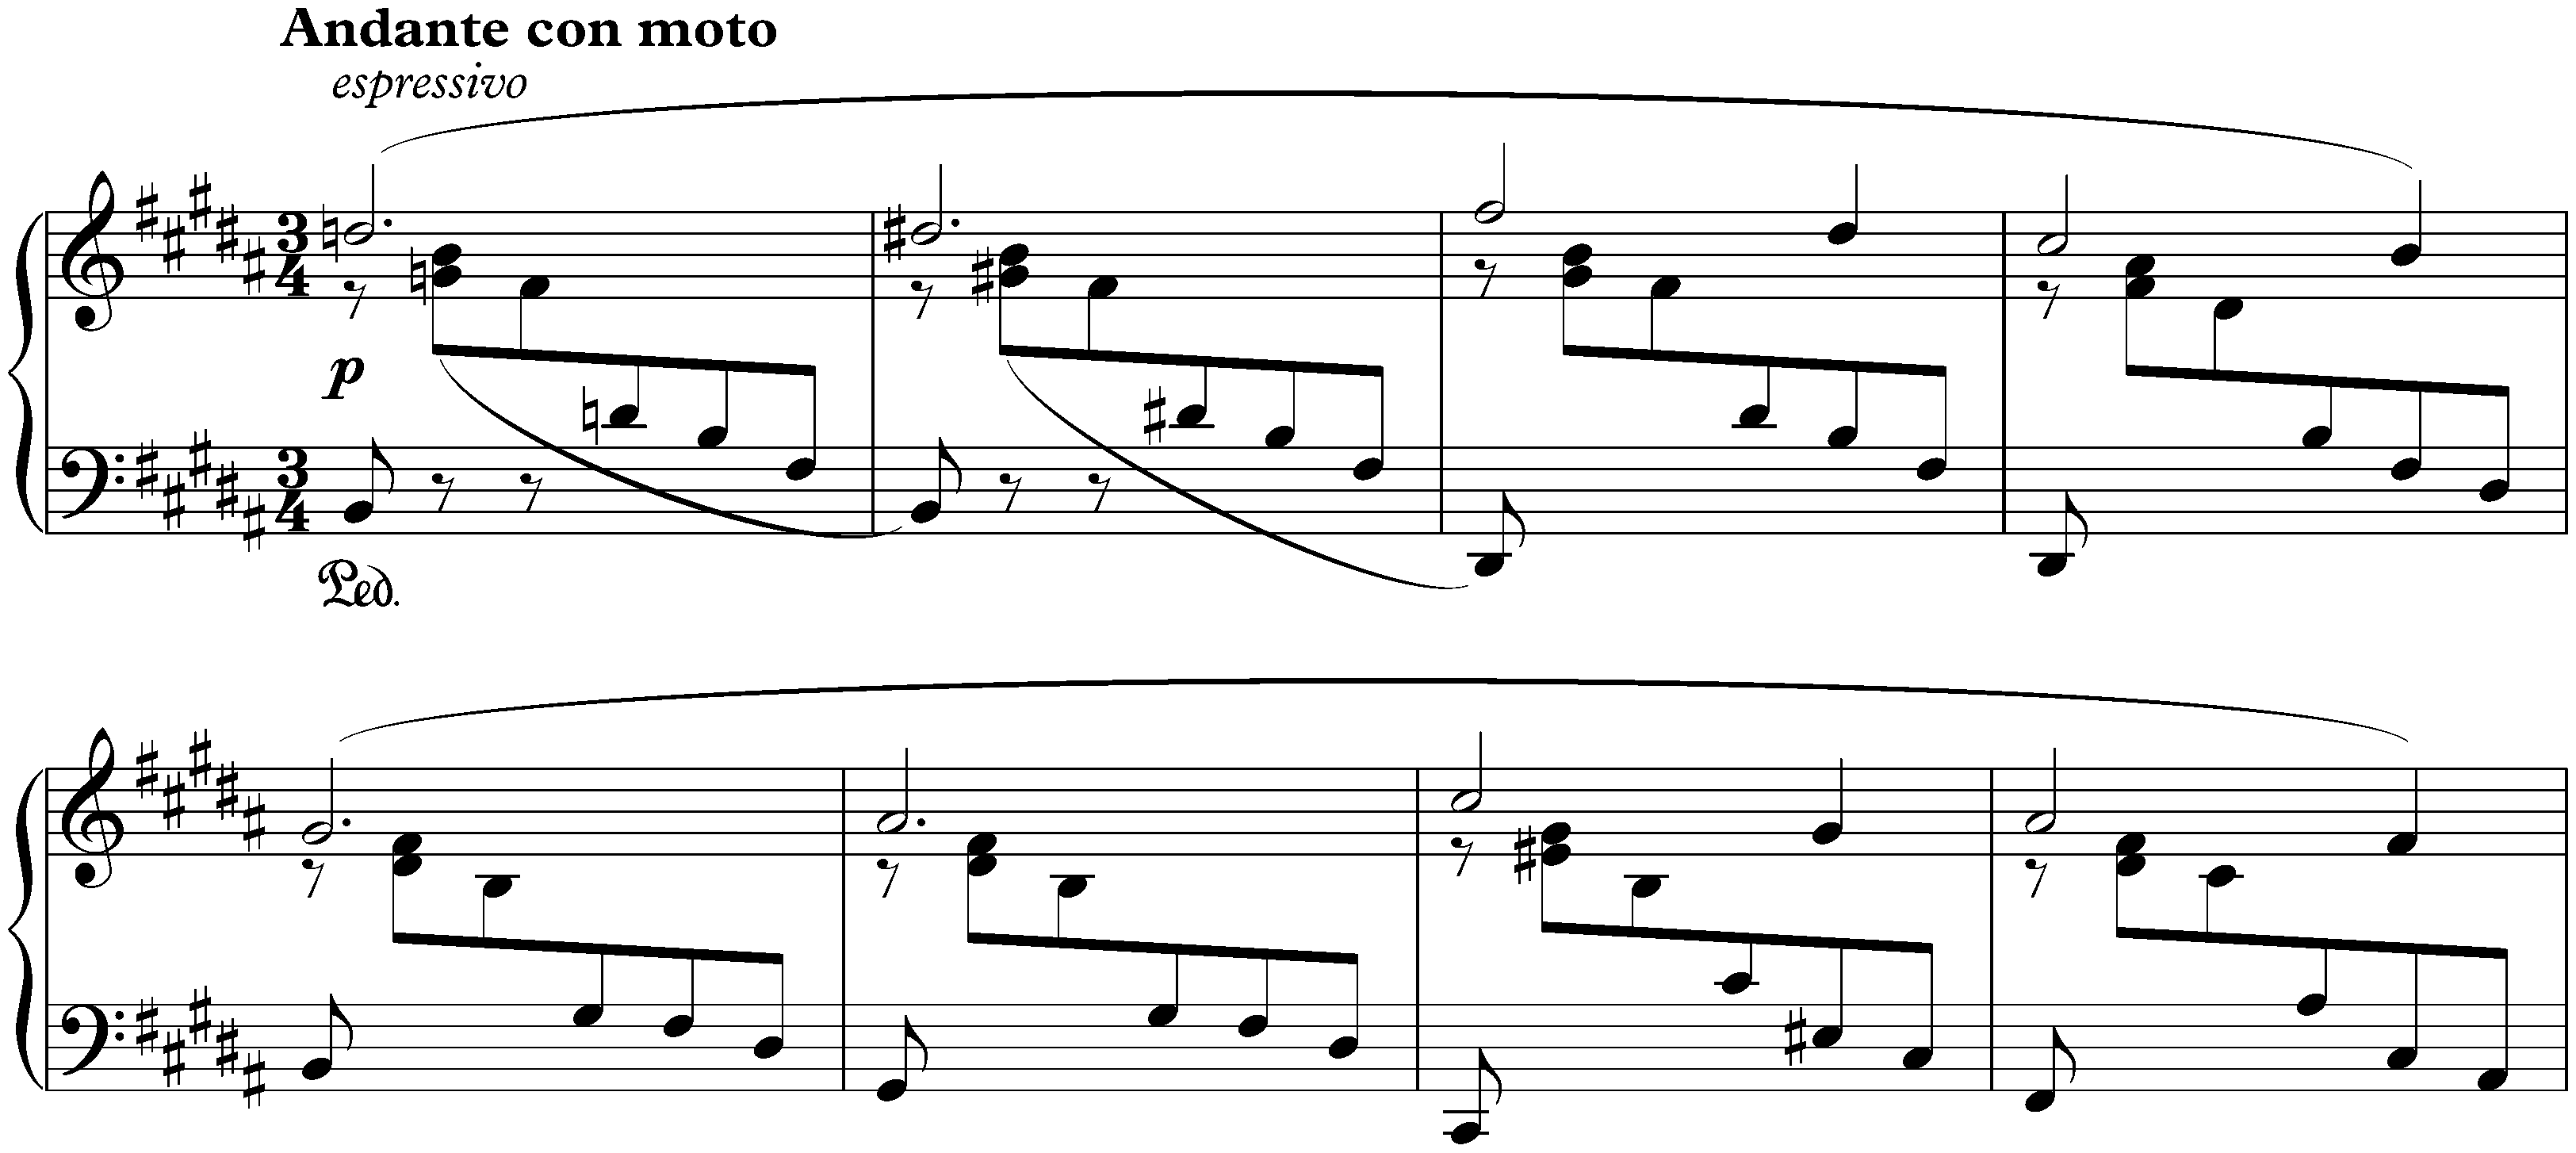 Four Ballades, op. 10; 4. B major